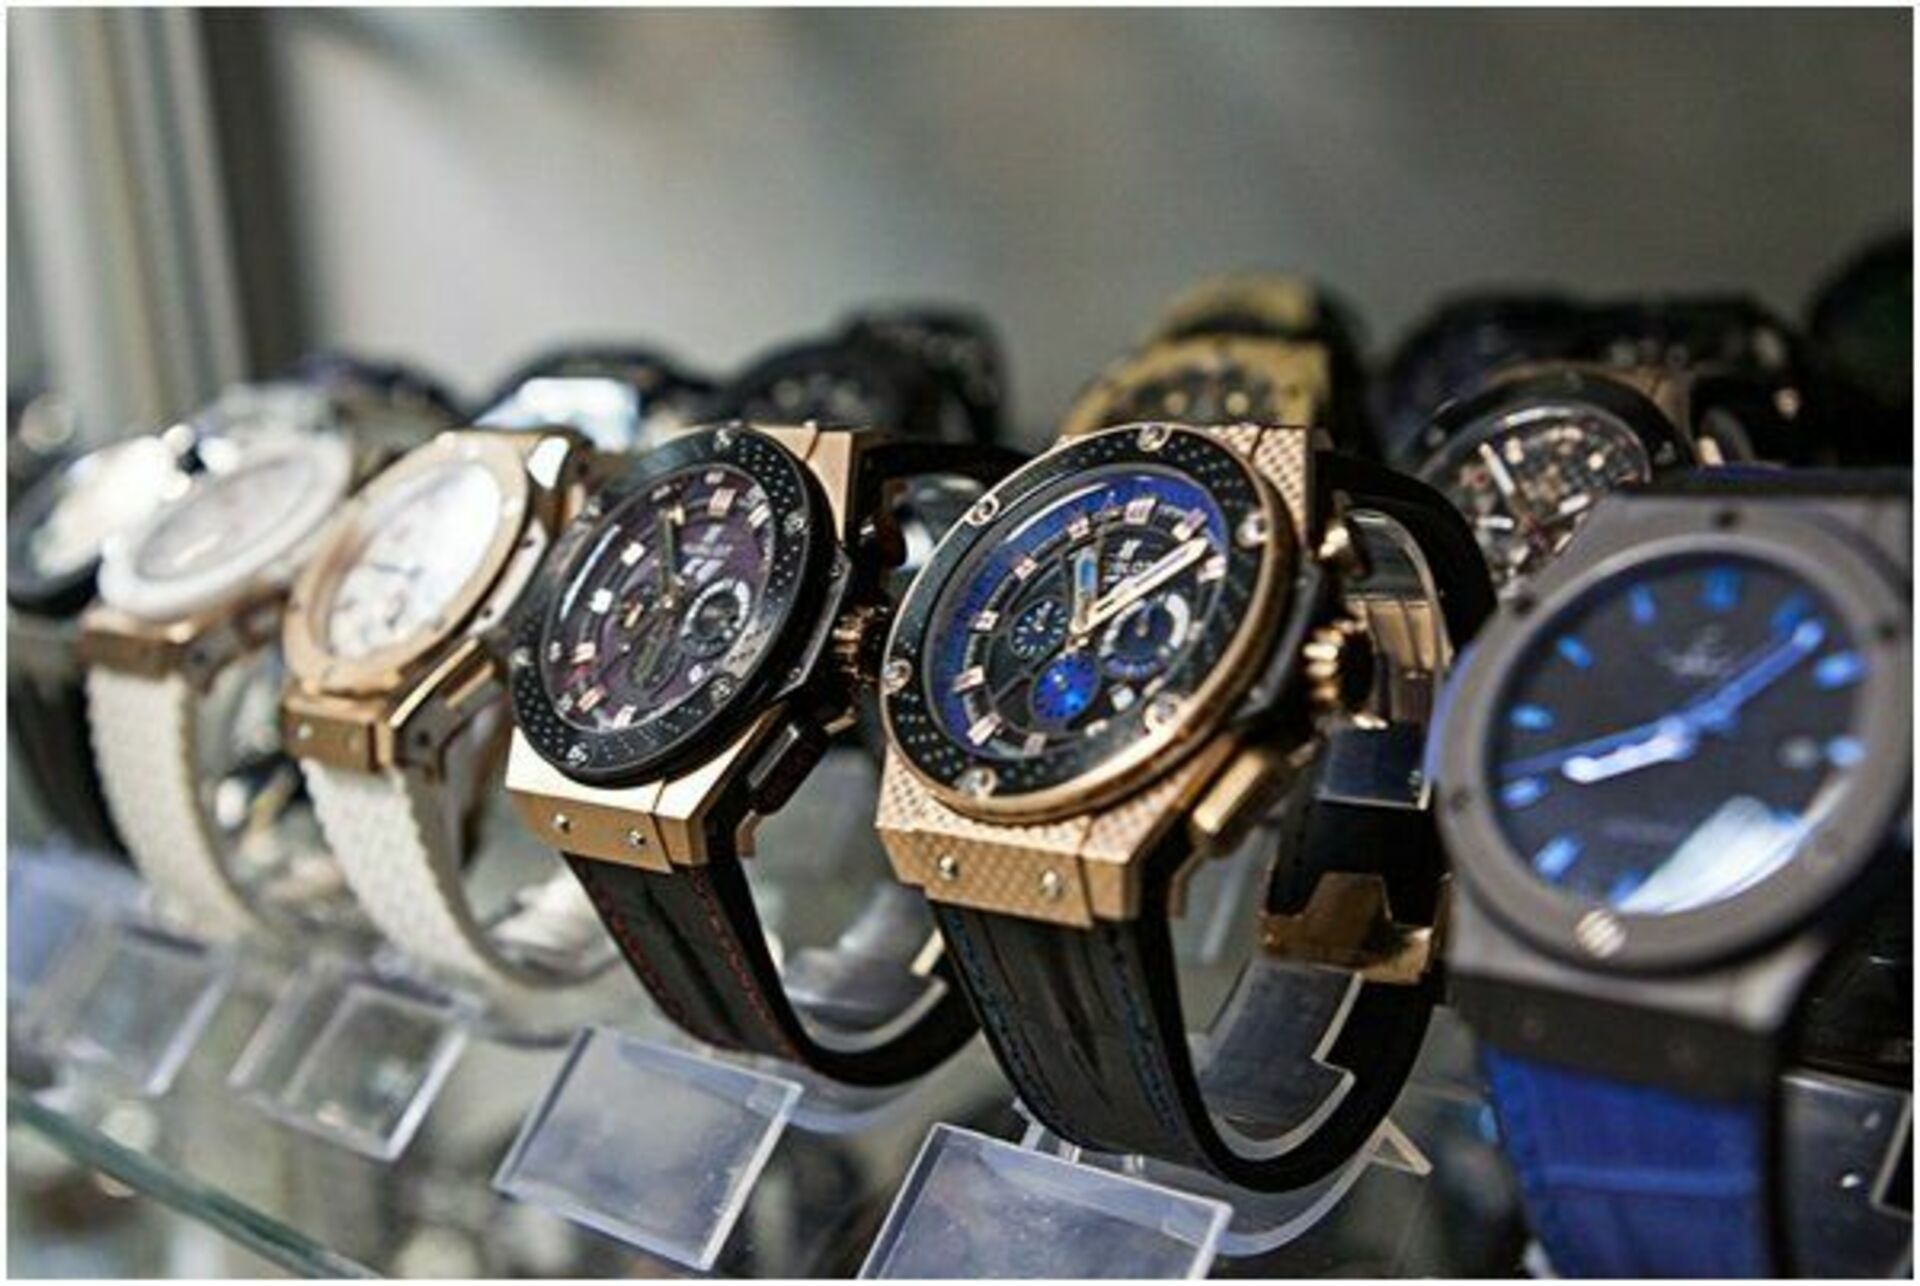 Опт наручных часов. Брендовые часы. Швейцарские часы. Коллекция мужских часов. Дорогие часы в магазине.